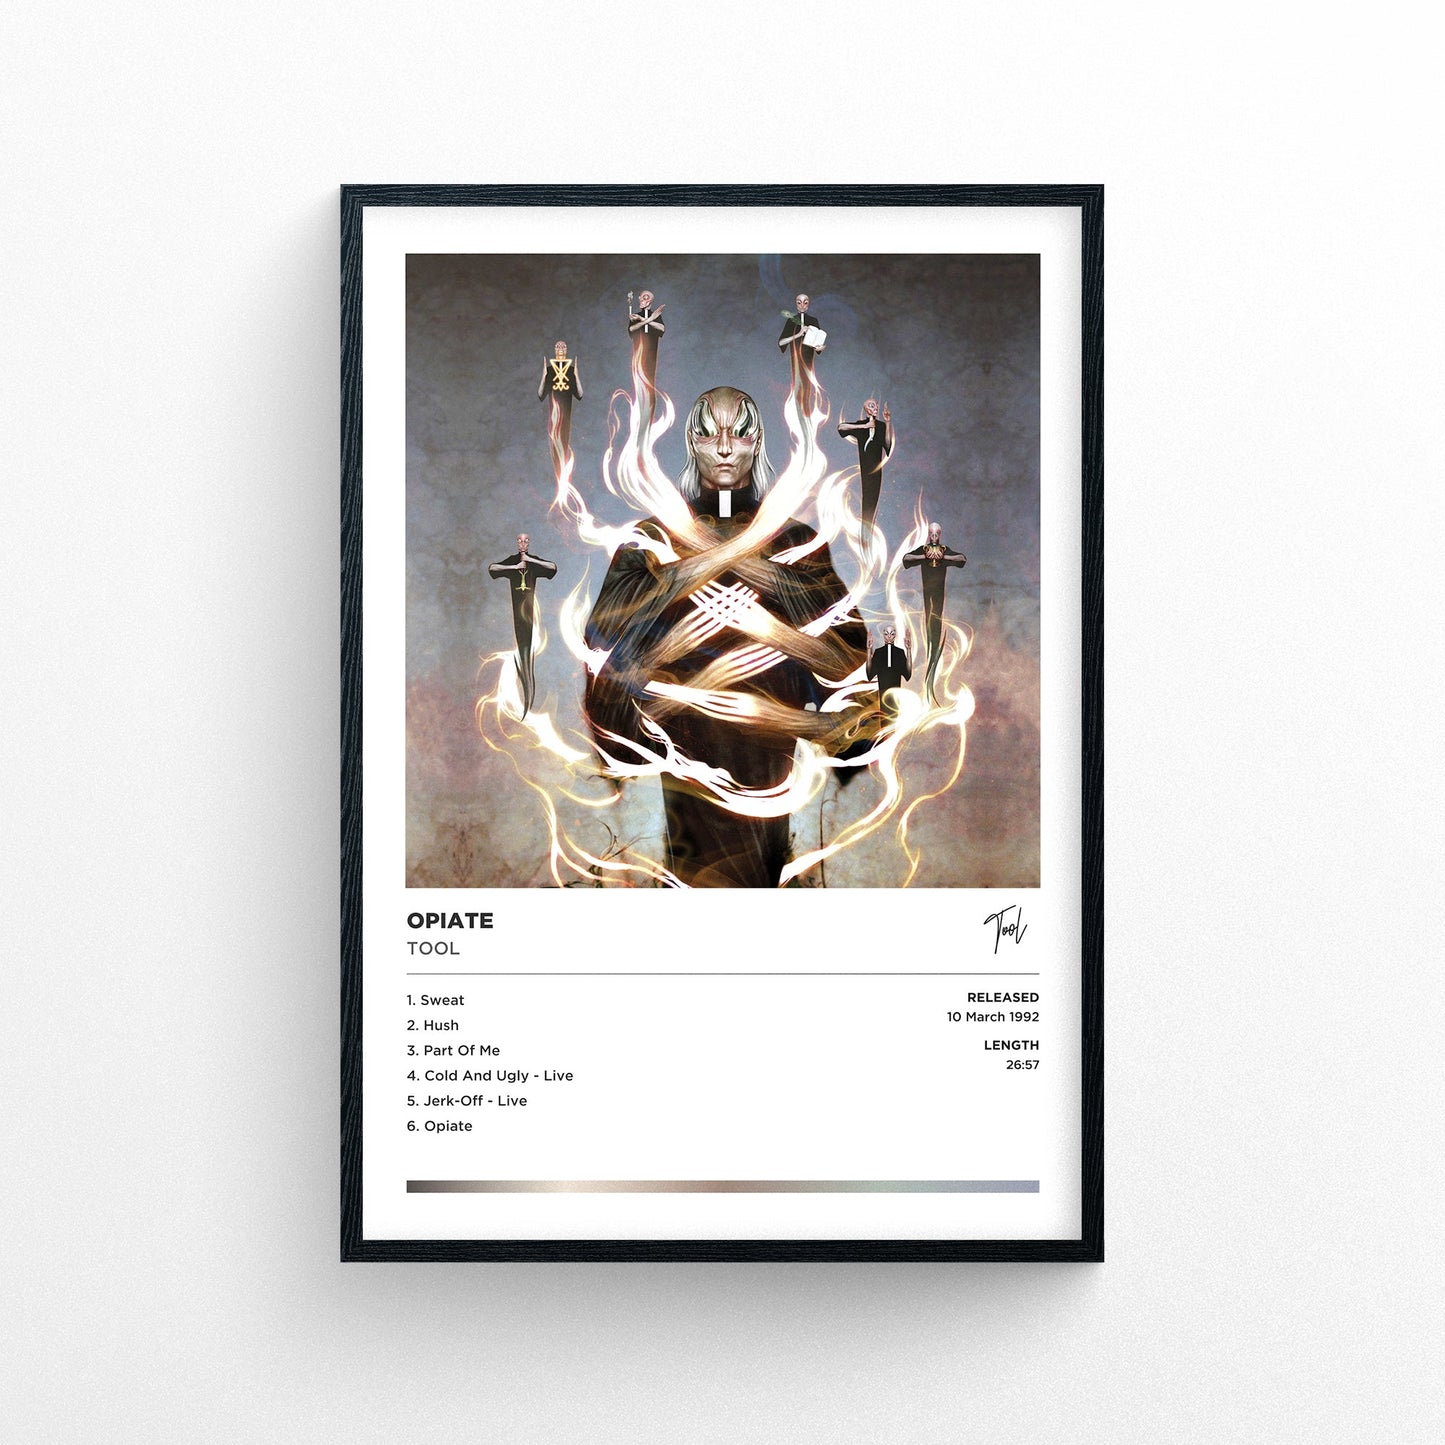 Tool - Opiate Framed Poster Print | Polaroid Style | Album Cover Artwork